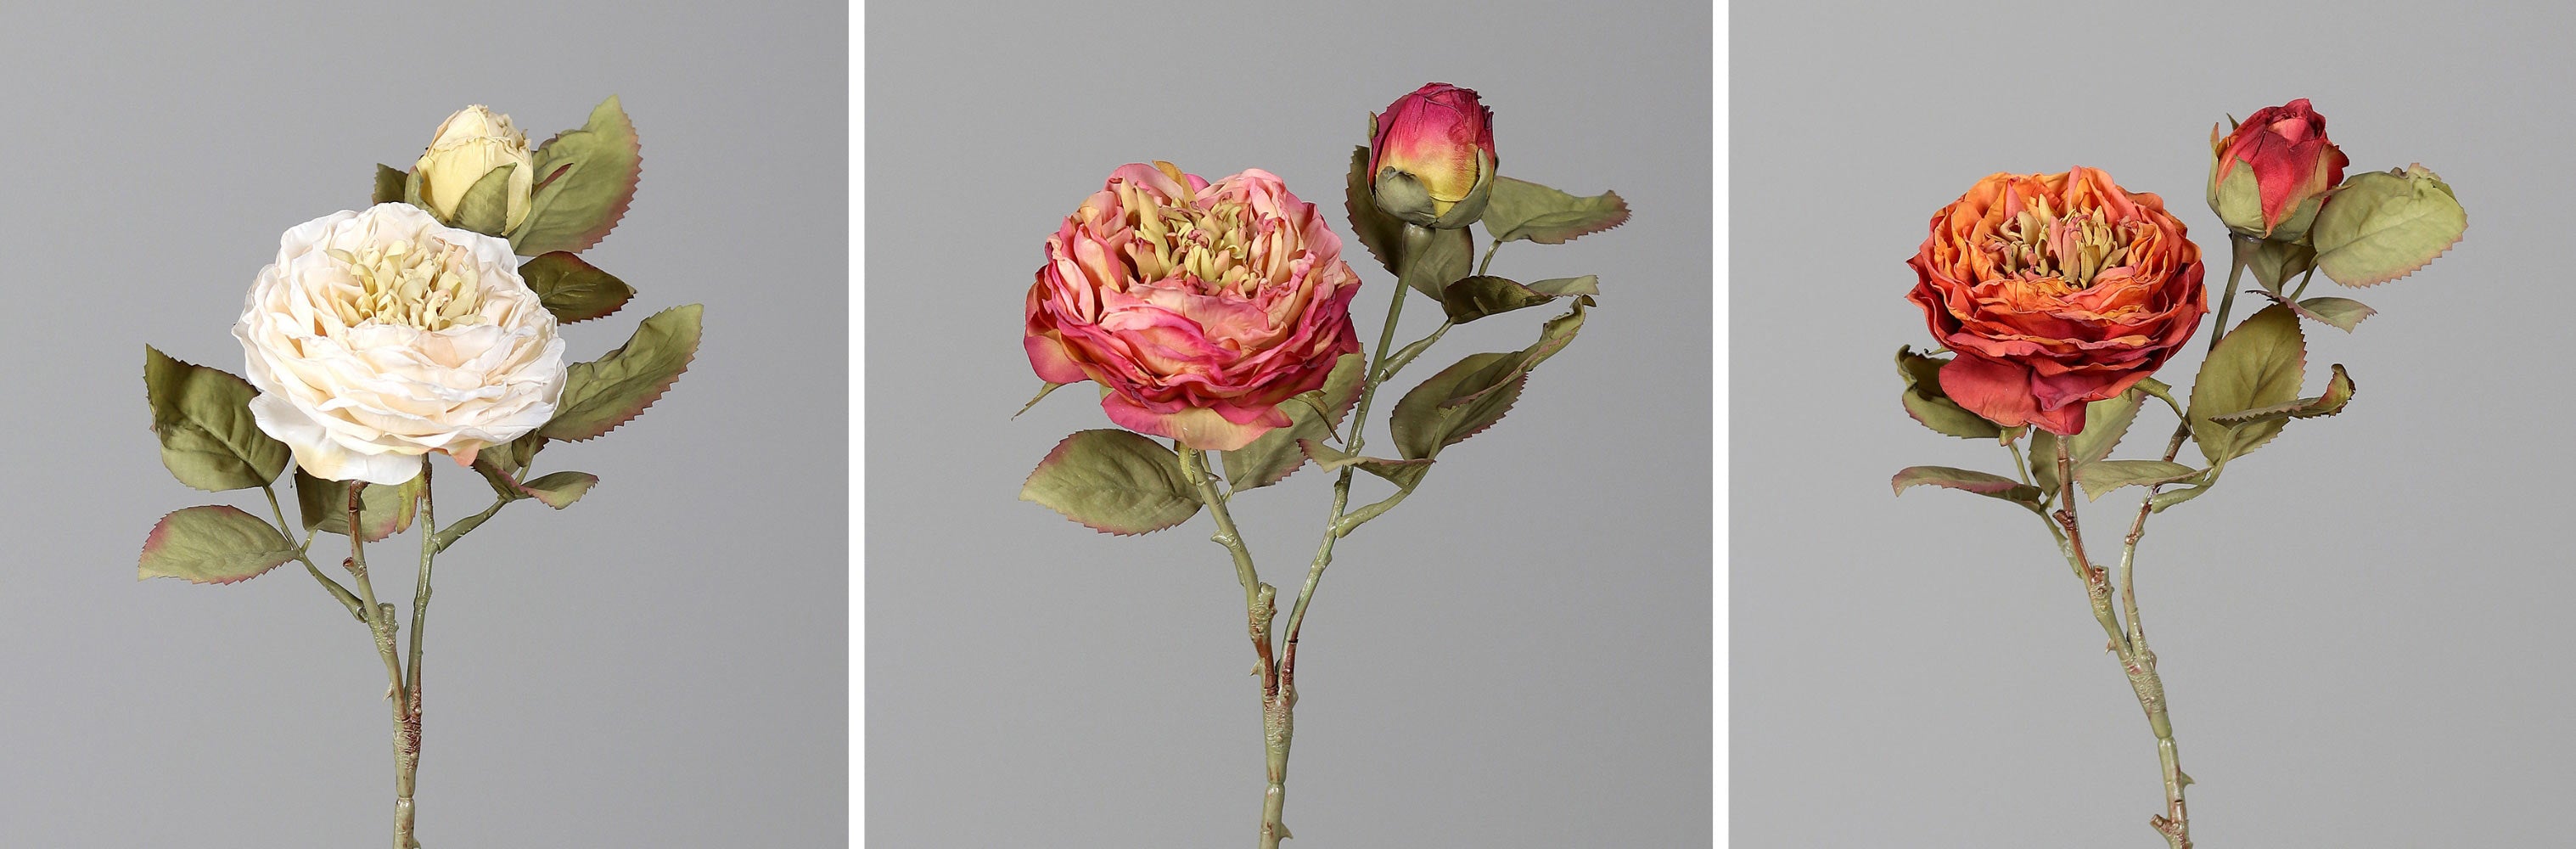 Krém, pink és narancs színű, szárított hatású mű rózsák.